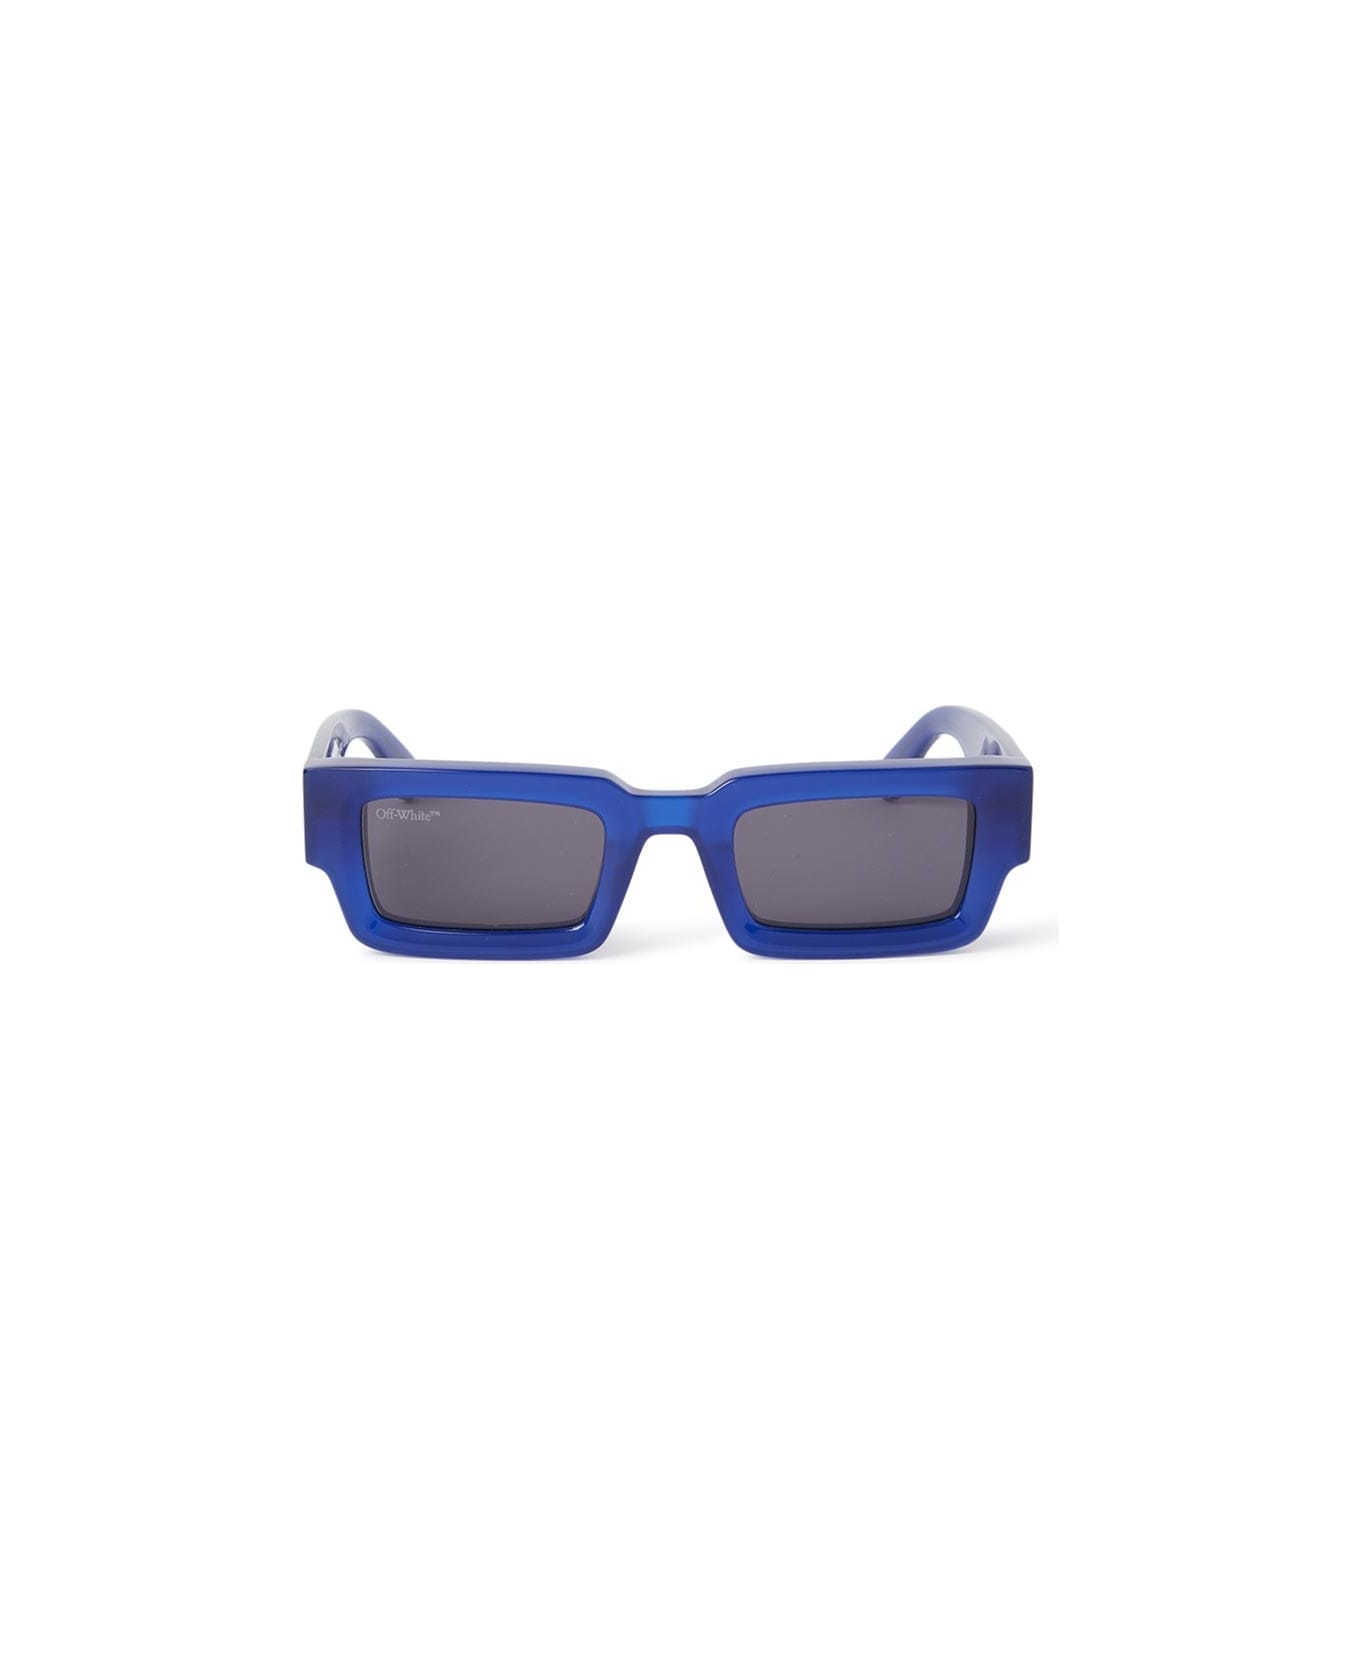 Off-White Lecce Sunglasses - 4607 BLUE